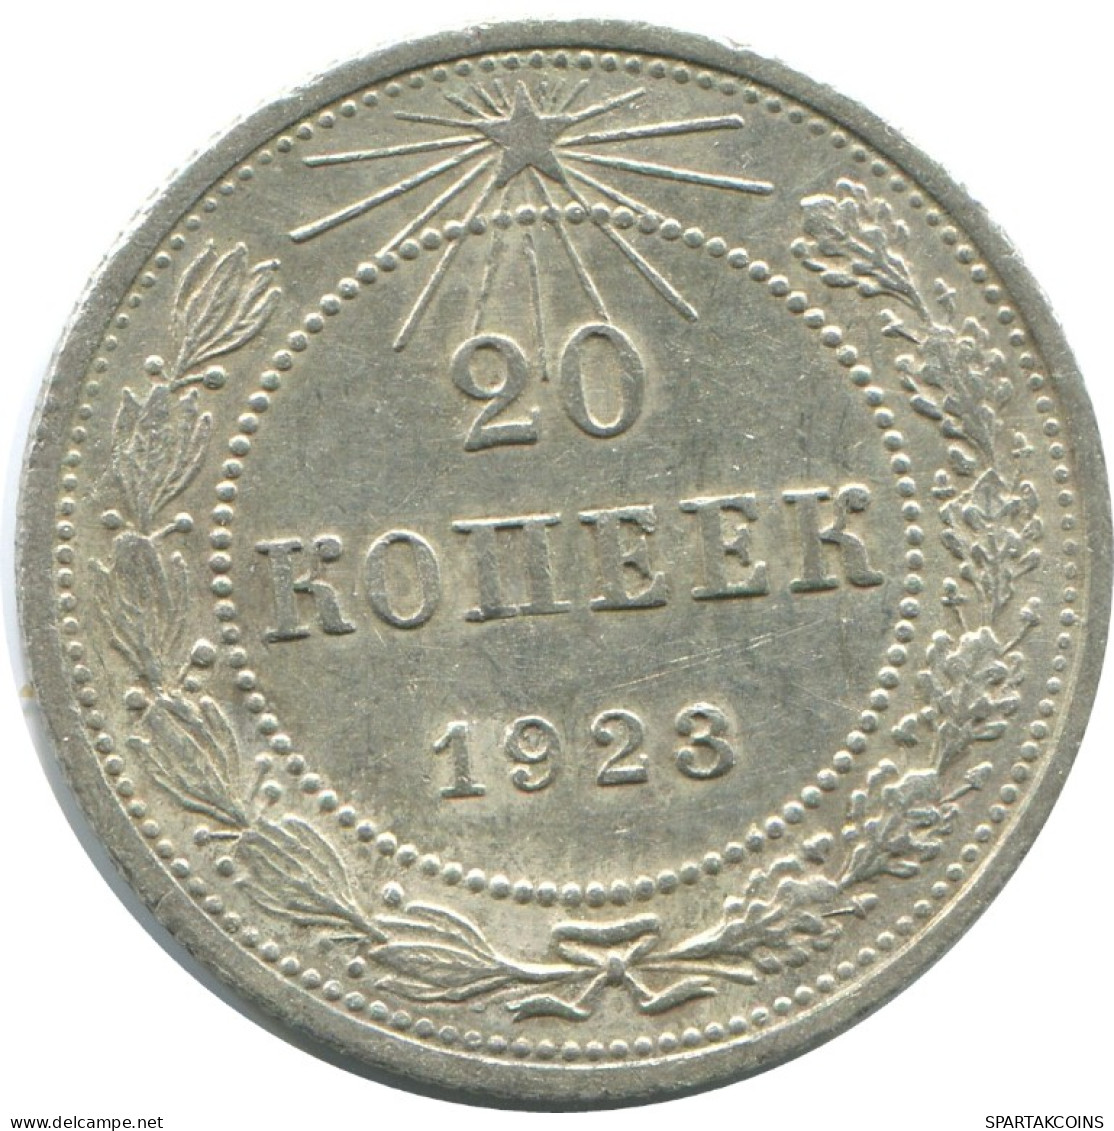 20 KOPEKS 1923 RUSSLAND RUSSIA RSFSR SILBER Münze HIGH GRADE #AF569.4.D.A - Russia